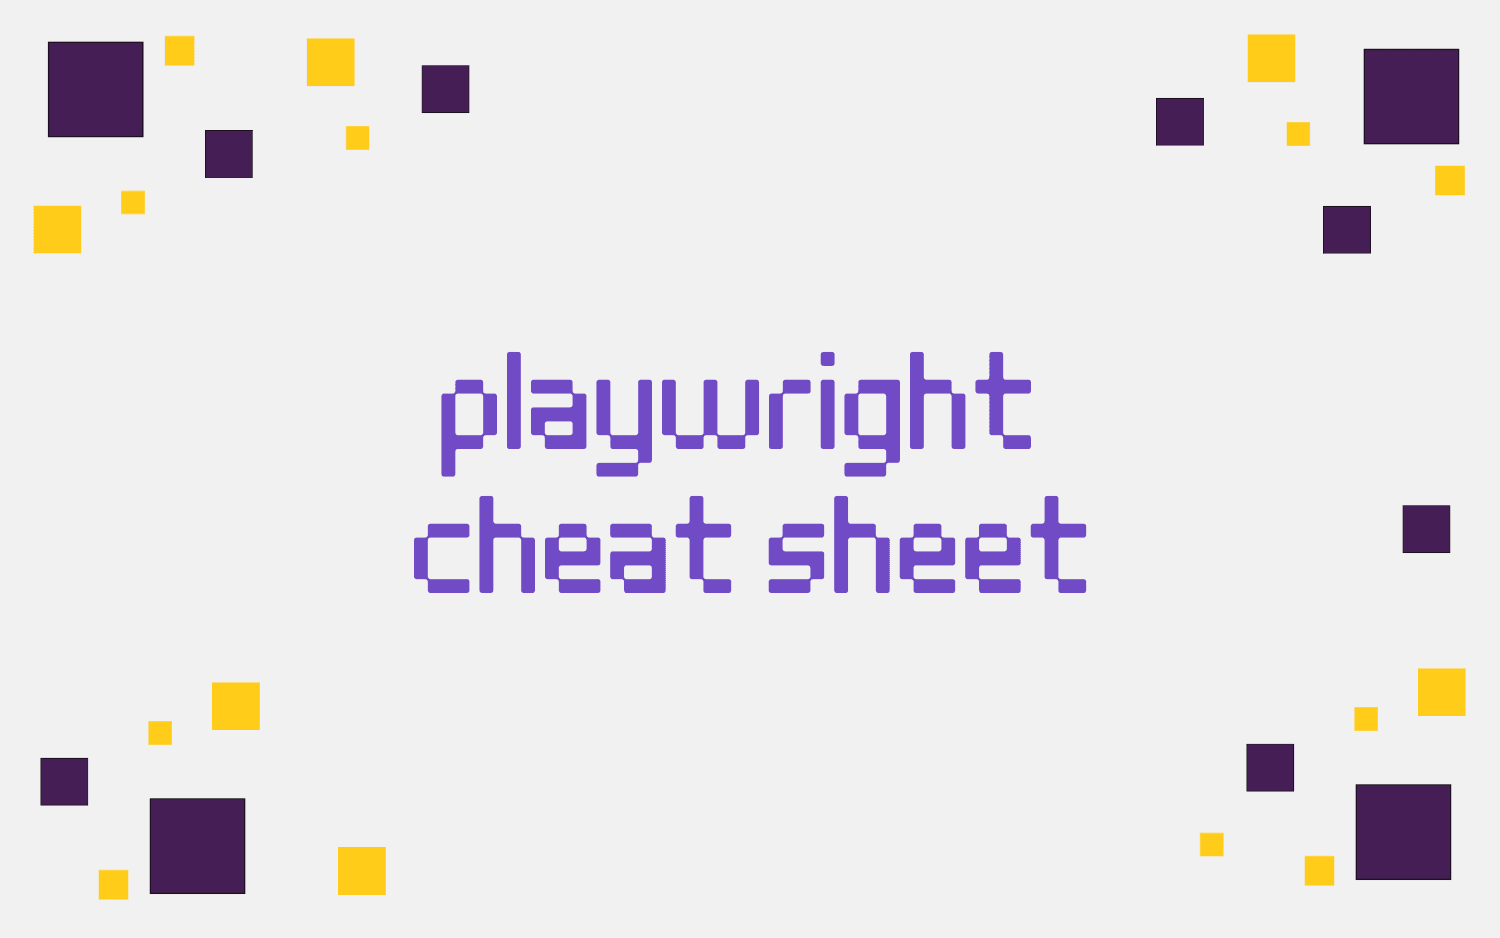 playwright cheat sheet 